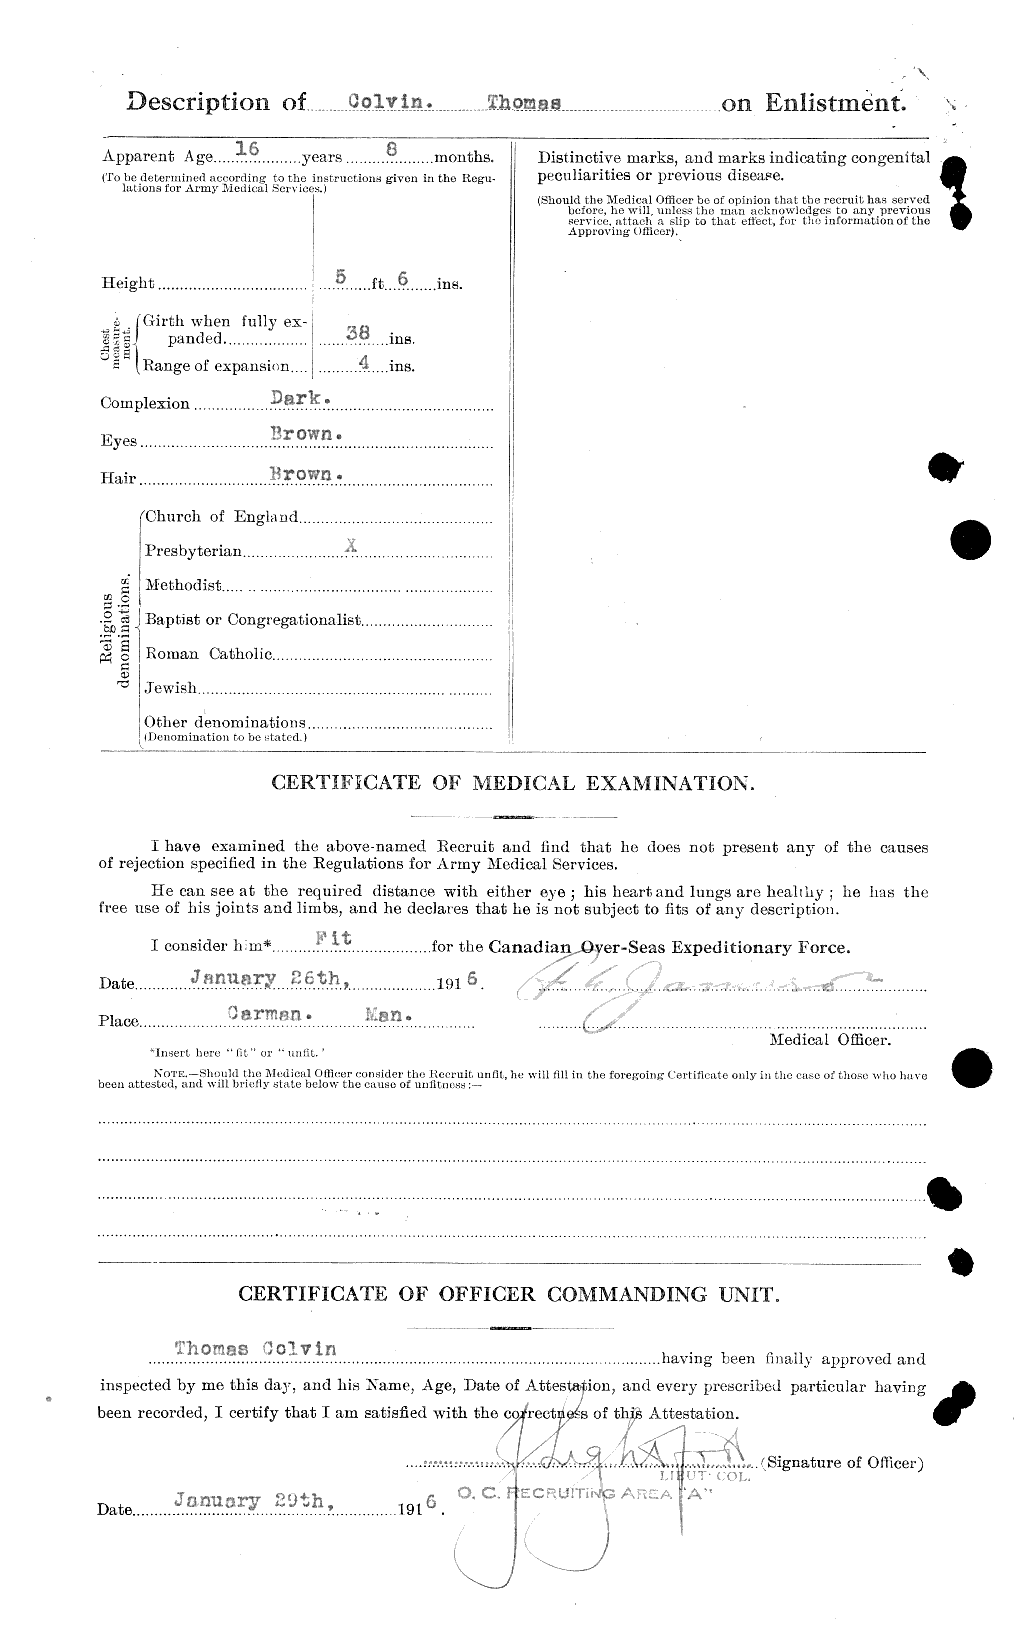 Dossiers du Personnel de la Première Guerre mondiale - CEC 043793b